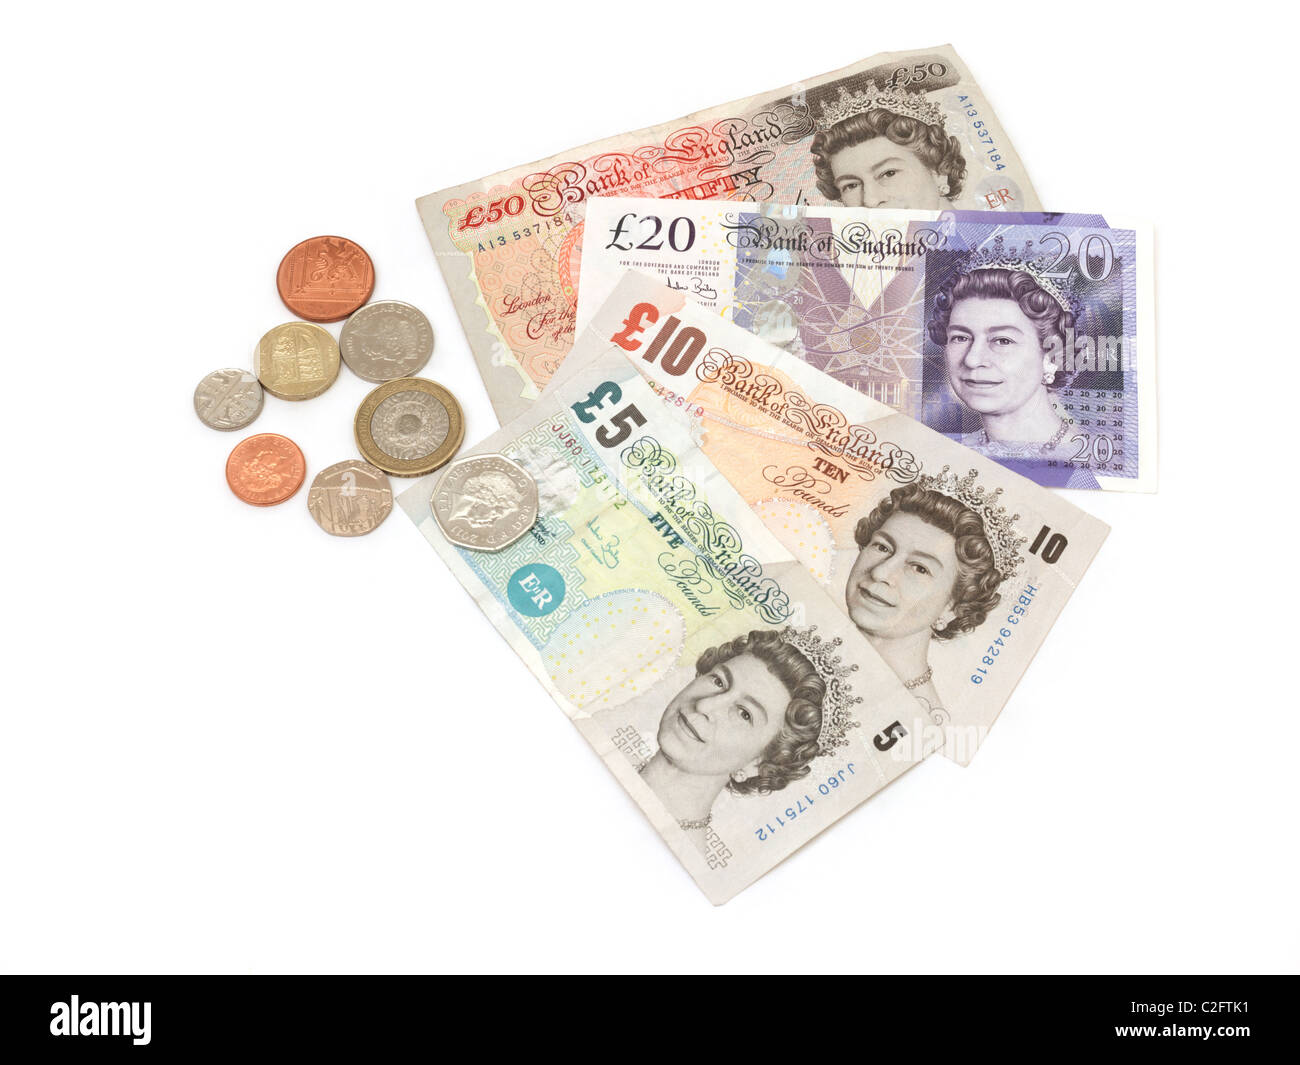 Sterling-Banknoten und-Münzen £5, £10, £20, £50 und 1 Cent, 2 Cent, 5 Cent, 10 Cent, 20 Cent, 50 Pence, £1 Münze und £2 Münze Stockfoto